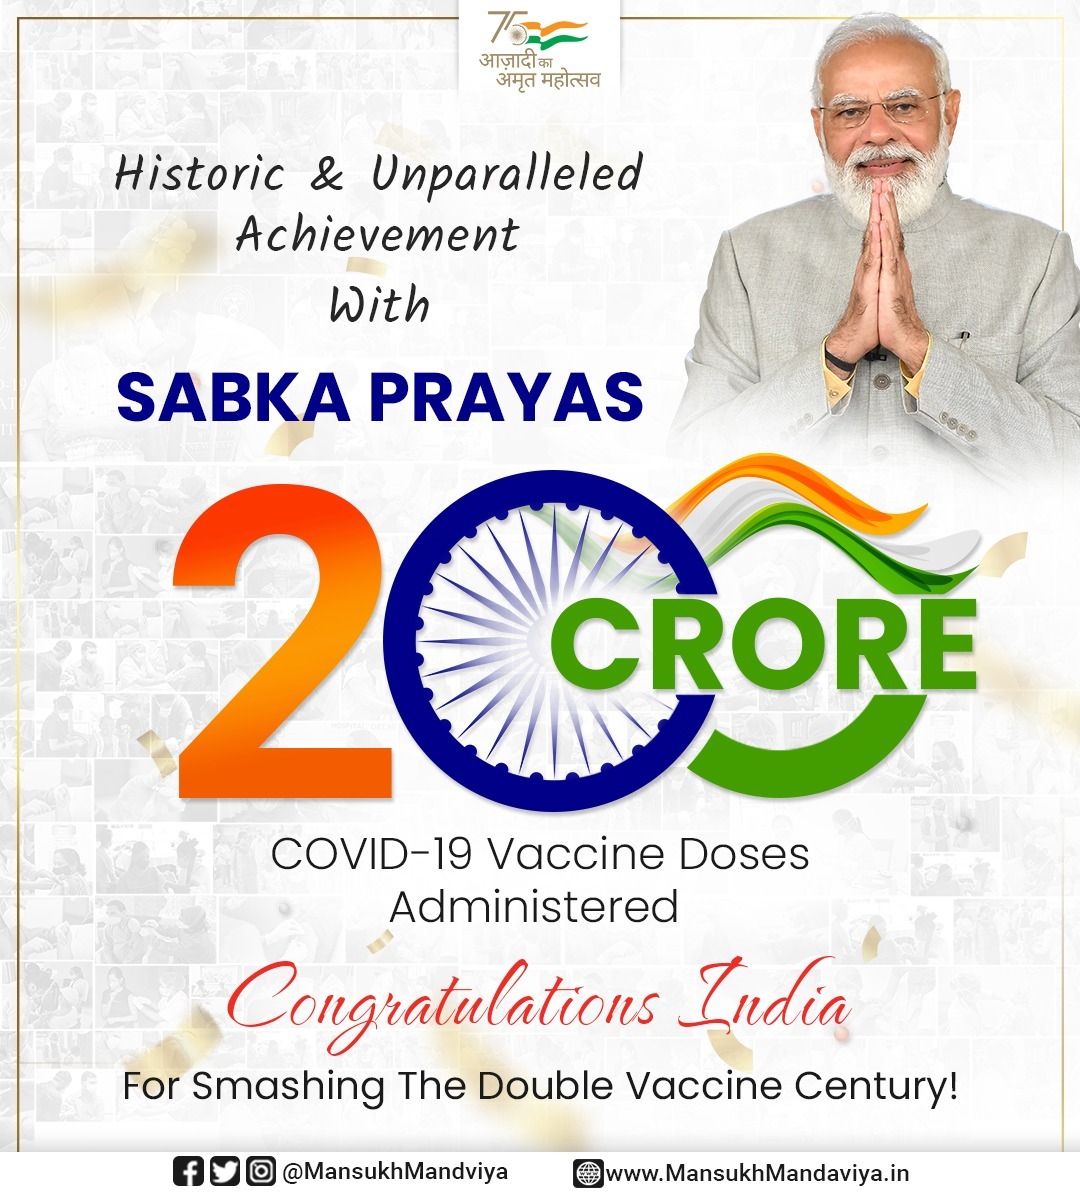 #200CroreVaccinations #WellDoneIndia